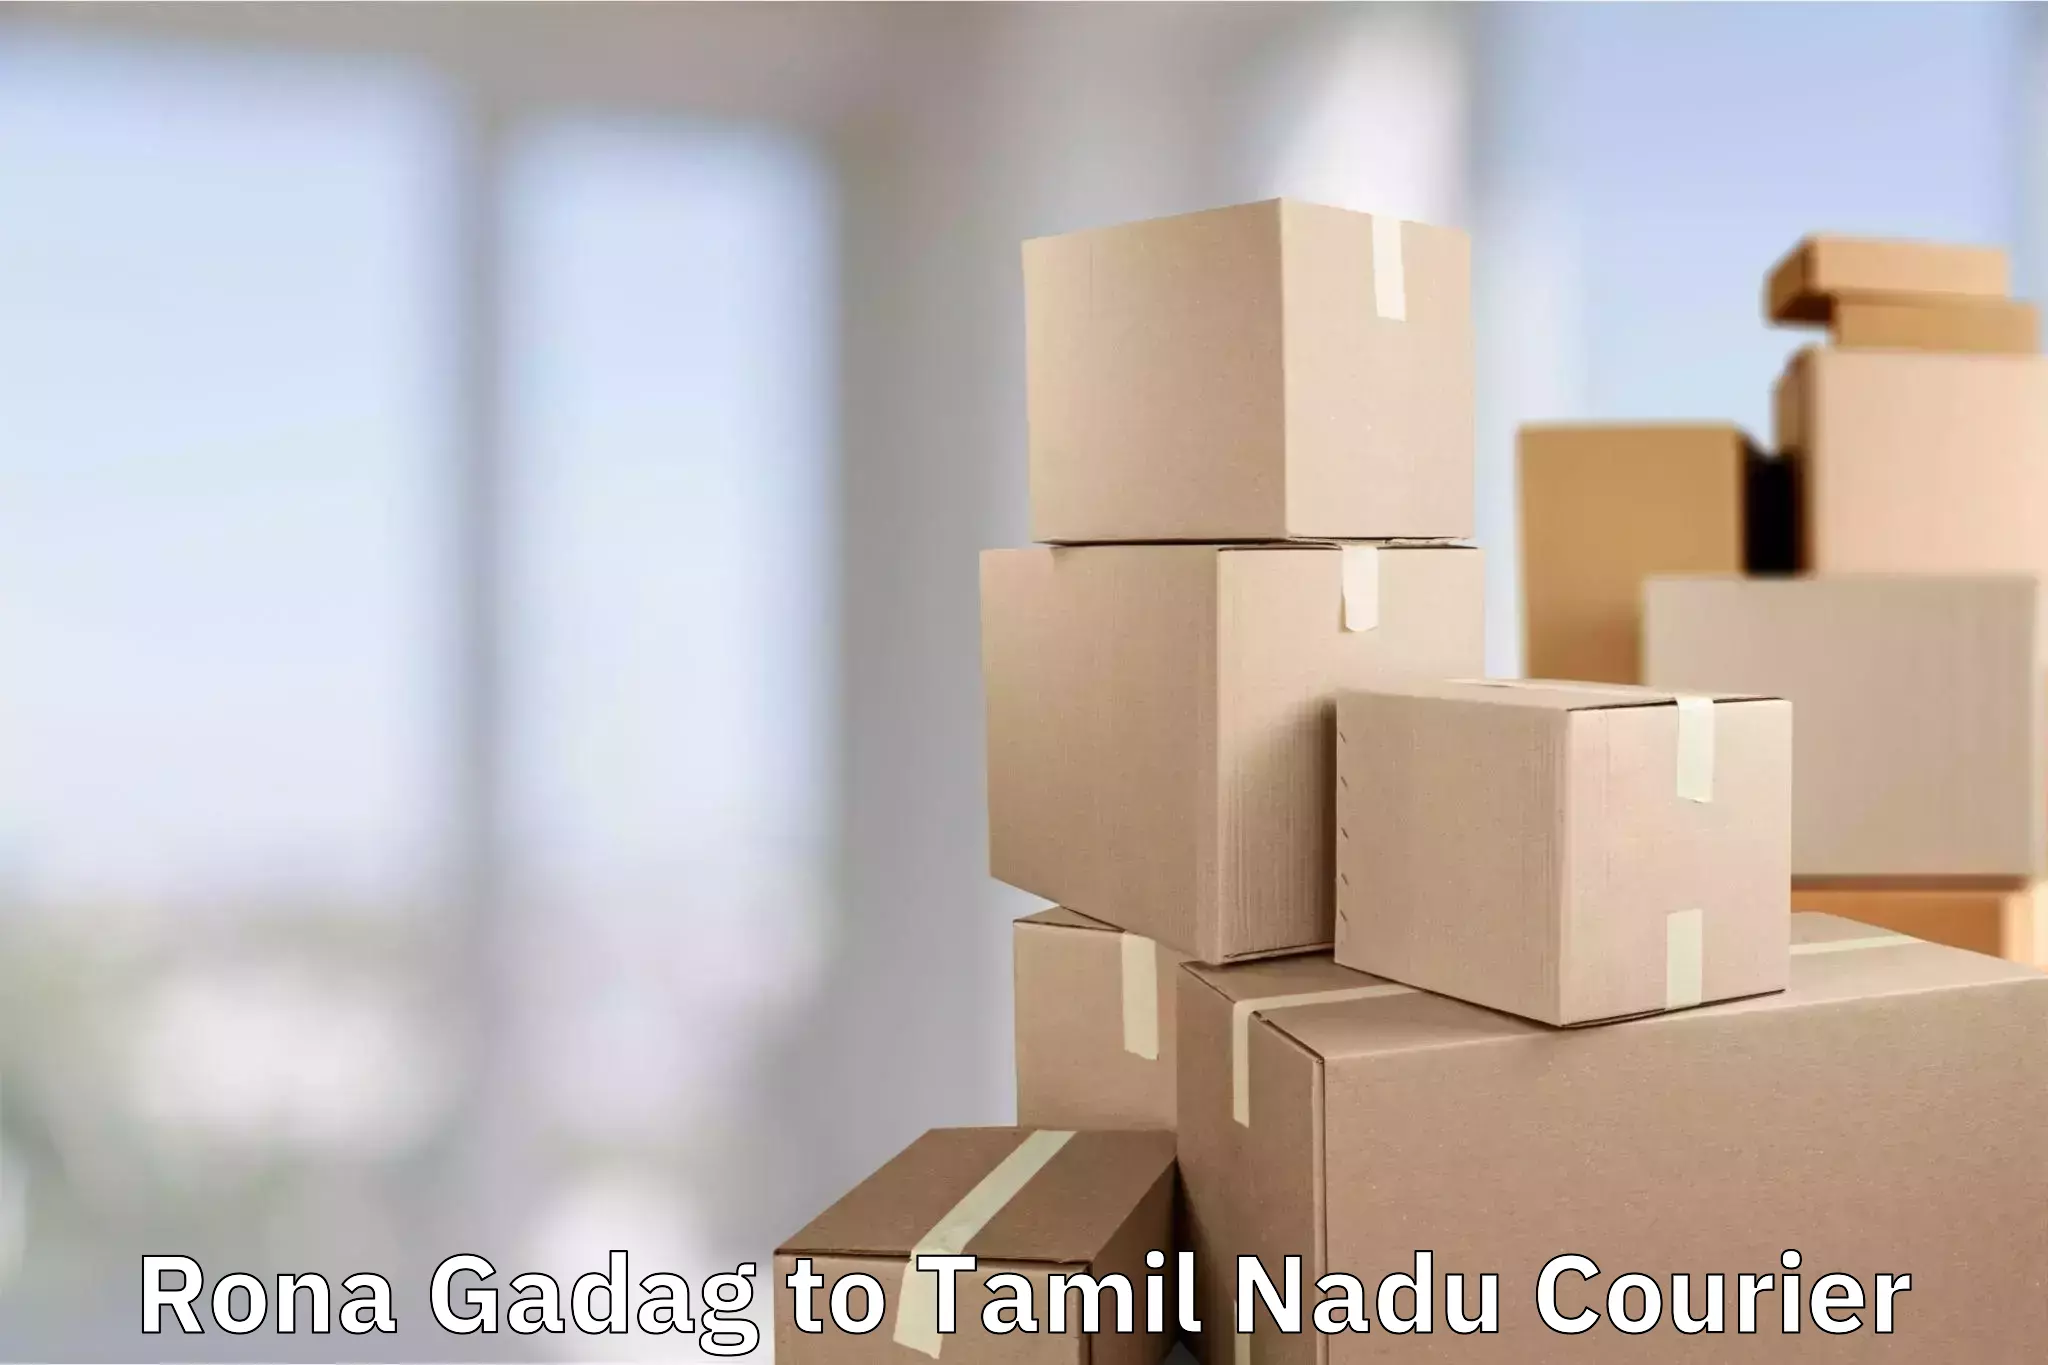 Luggage shipping estimate Rona Gadag to Thiruvadanai